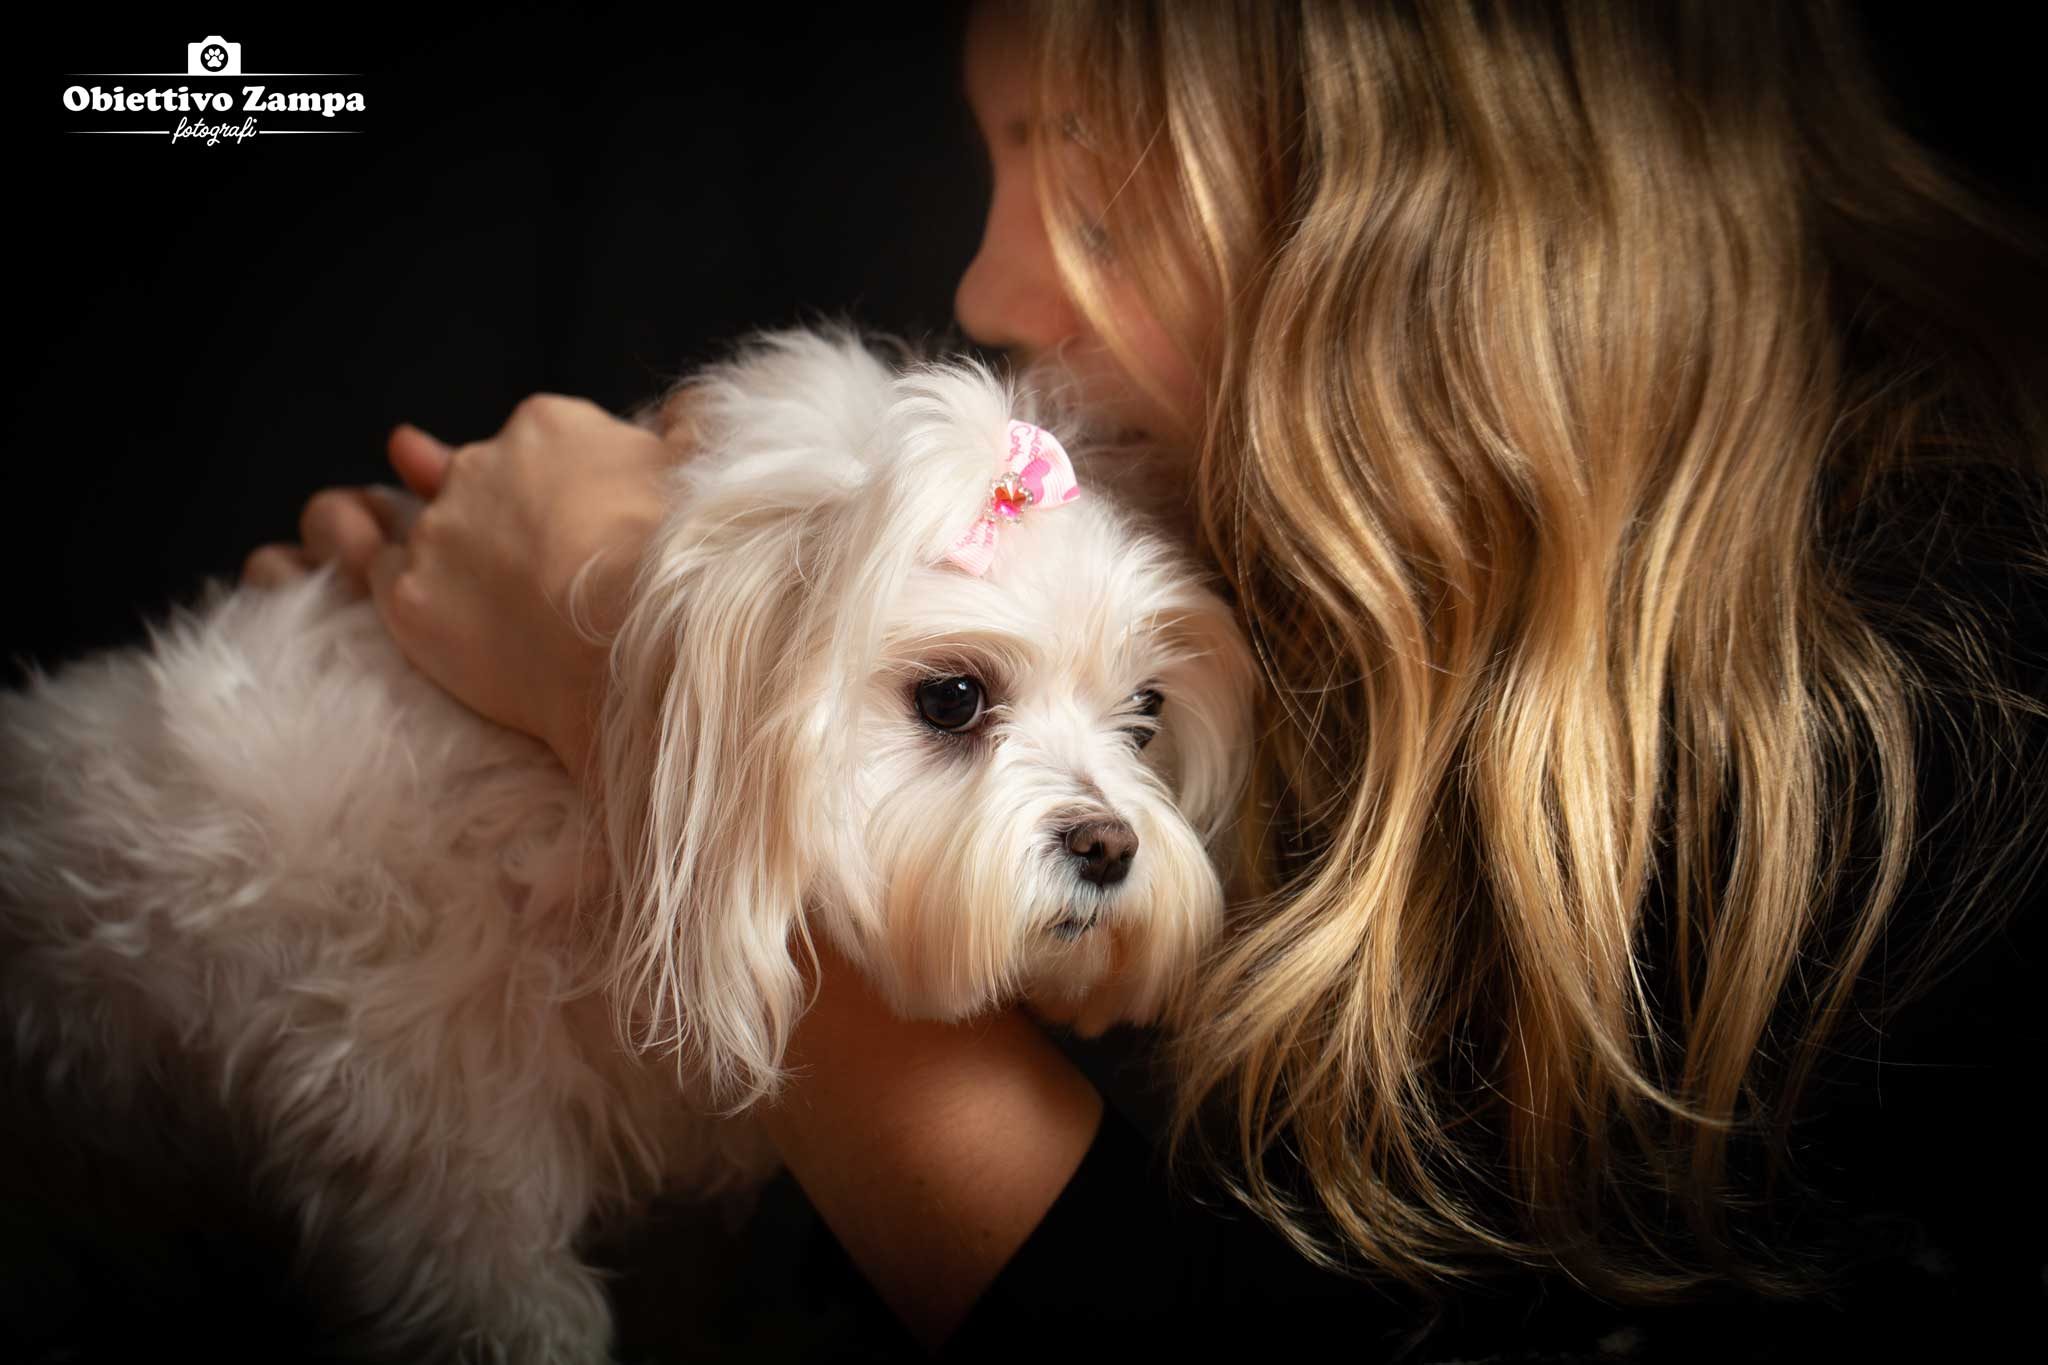 foto cani Bologna Obiettivo Zampa fotografo. Servizi fotografici professionali per animali domestici da compagnia, cane, gatti e cuccioli in studio fotografico, dog photography